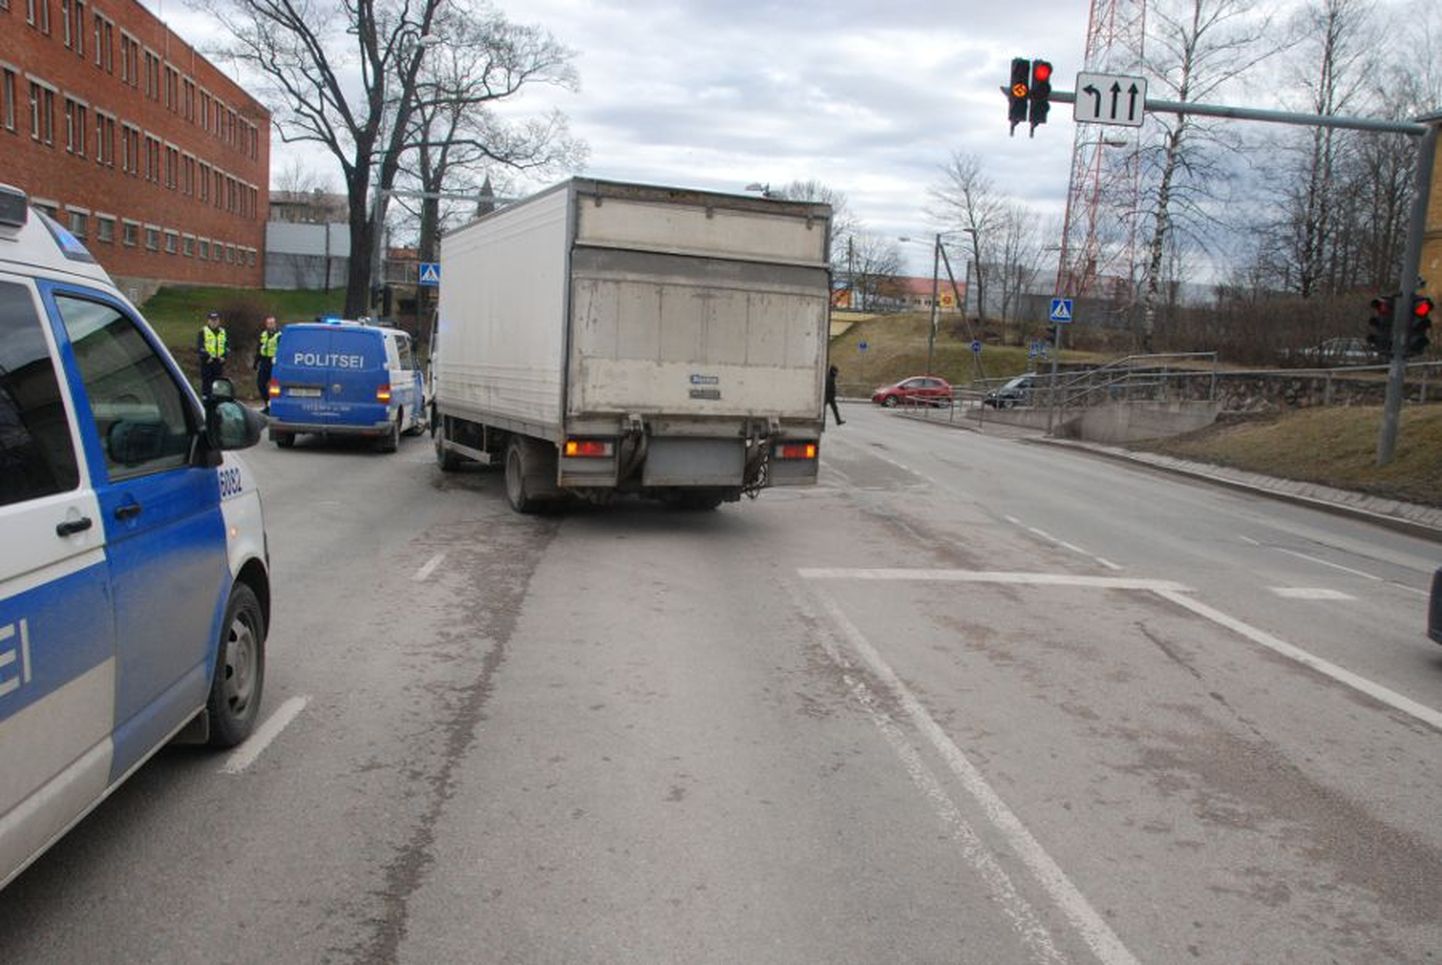 Liiklusõnnetus Tartus Riia ja Lembitu tänava ristmiku lähistel, milles osalesid politseisõiduk Volkswagen ja Volvo veoauto.